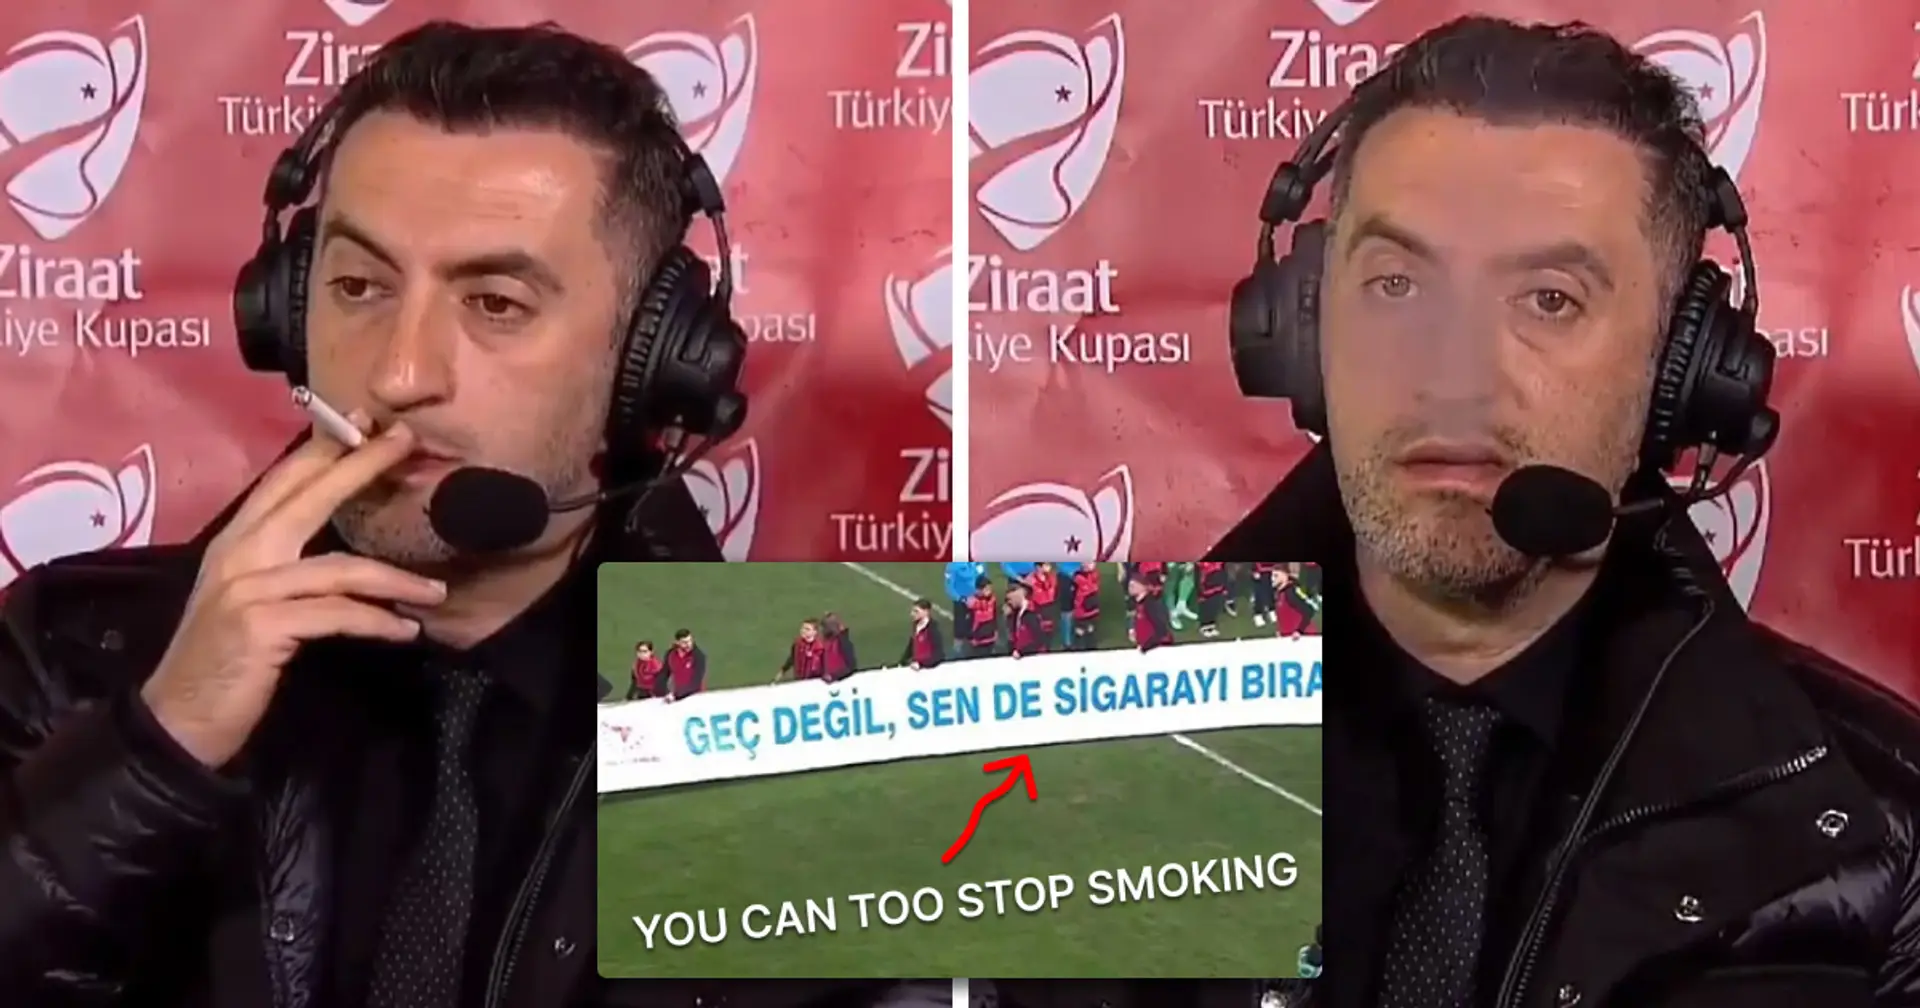 Un commentateur turc est surpris en train de fumer une cigarette en direct à la télévision tandis qu'une bannière ironique apparaît sur les écrans